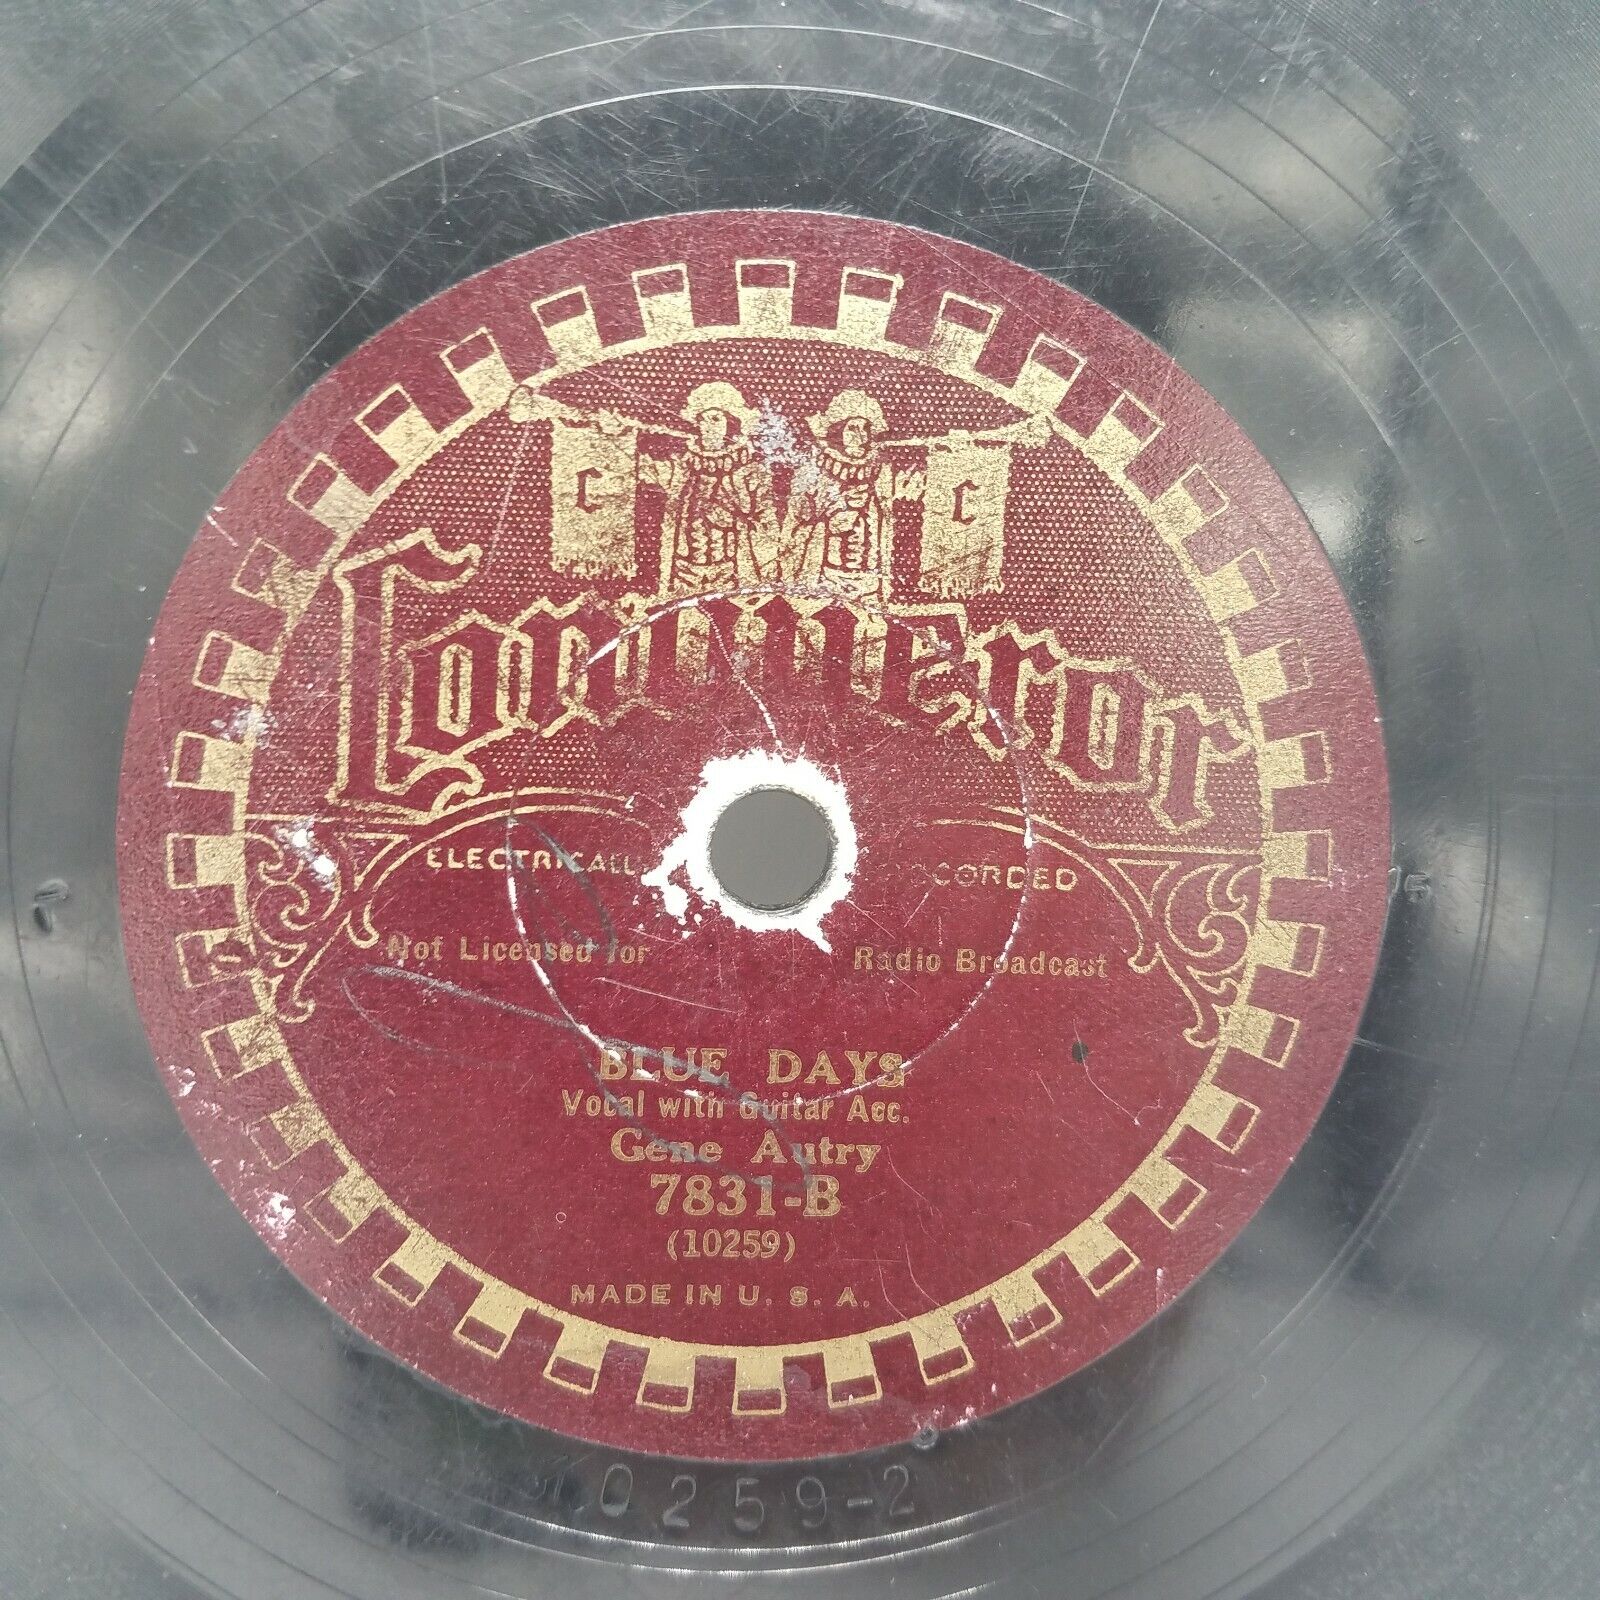 Gene Autry - Blue Days / Cowboy's Yodel - RARE Conquerorr Label 7831  